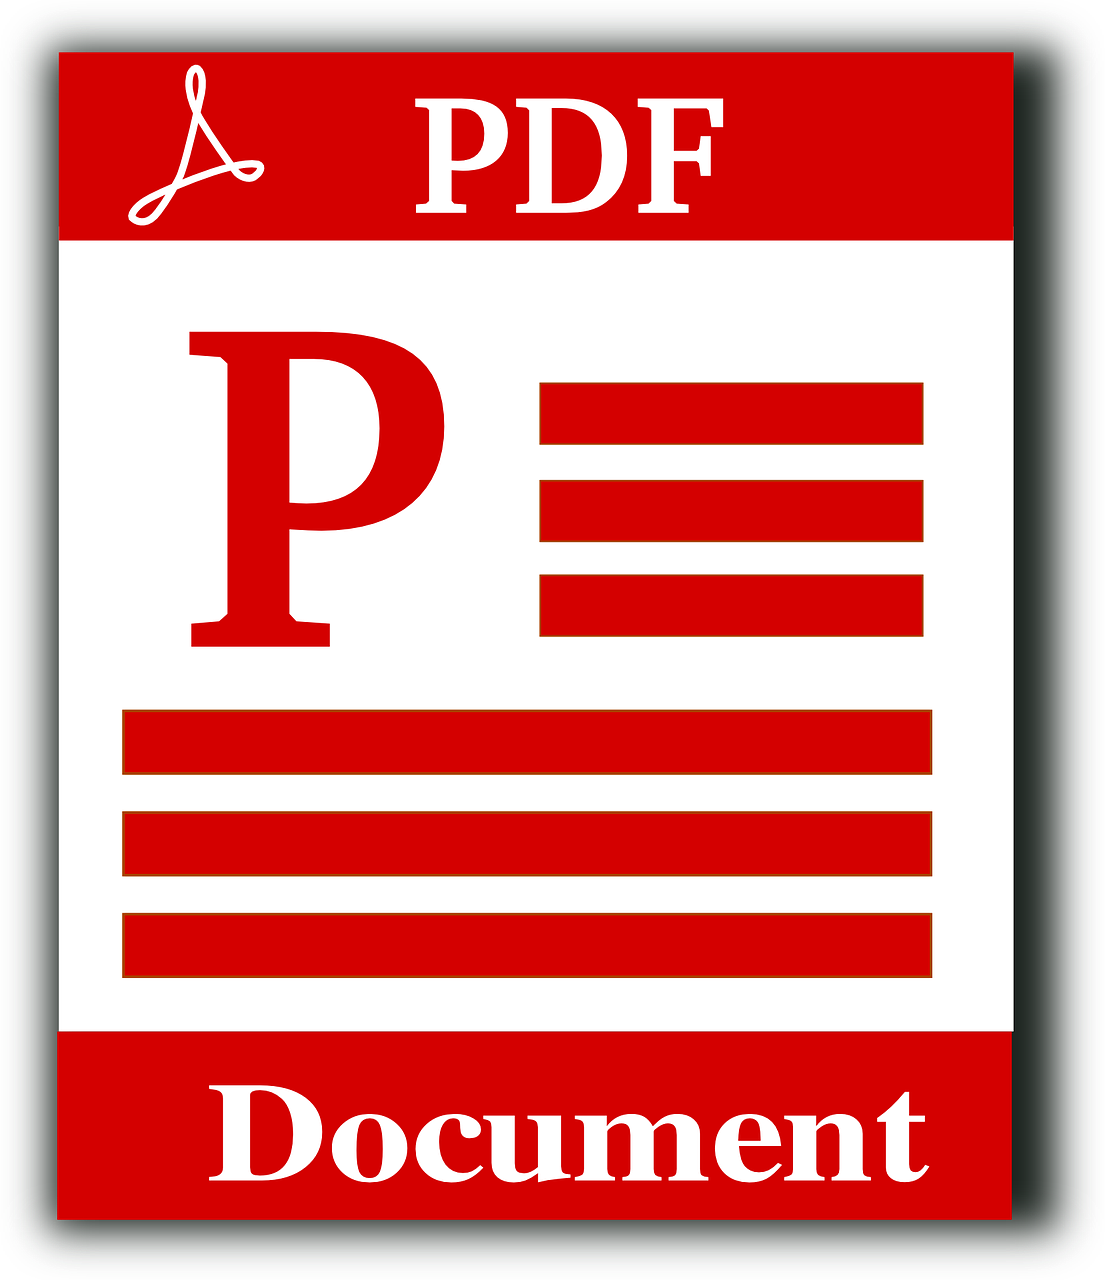 6 Cara Mengedit File PDF dengan Mudah, Bisa Lewat Laptop atau HP